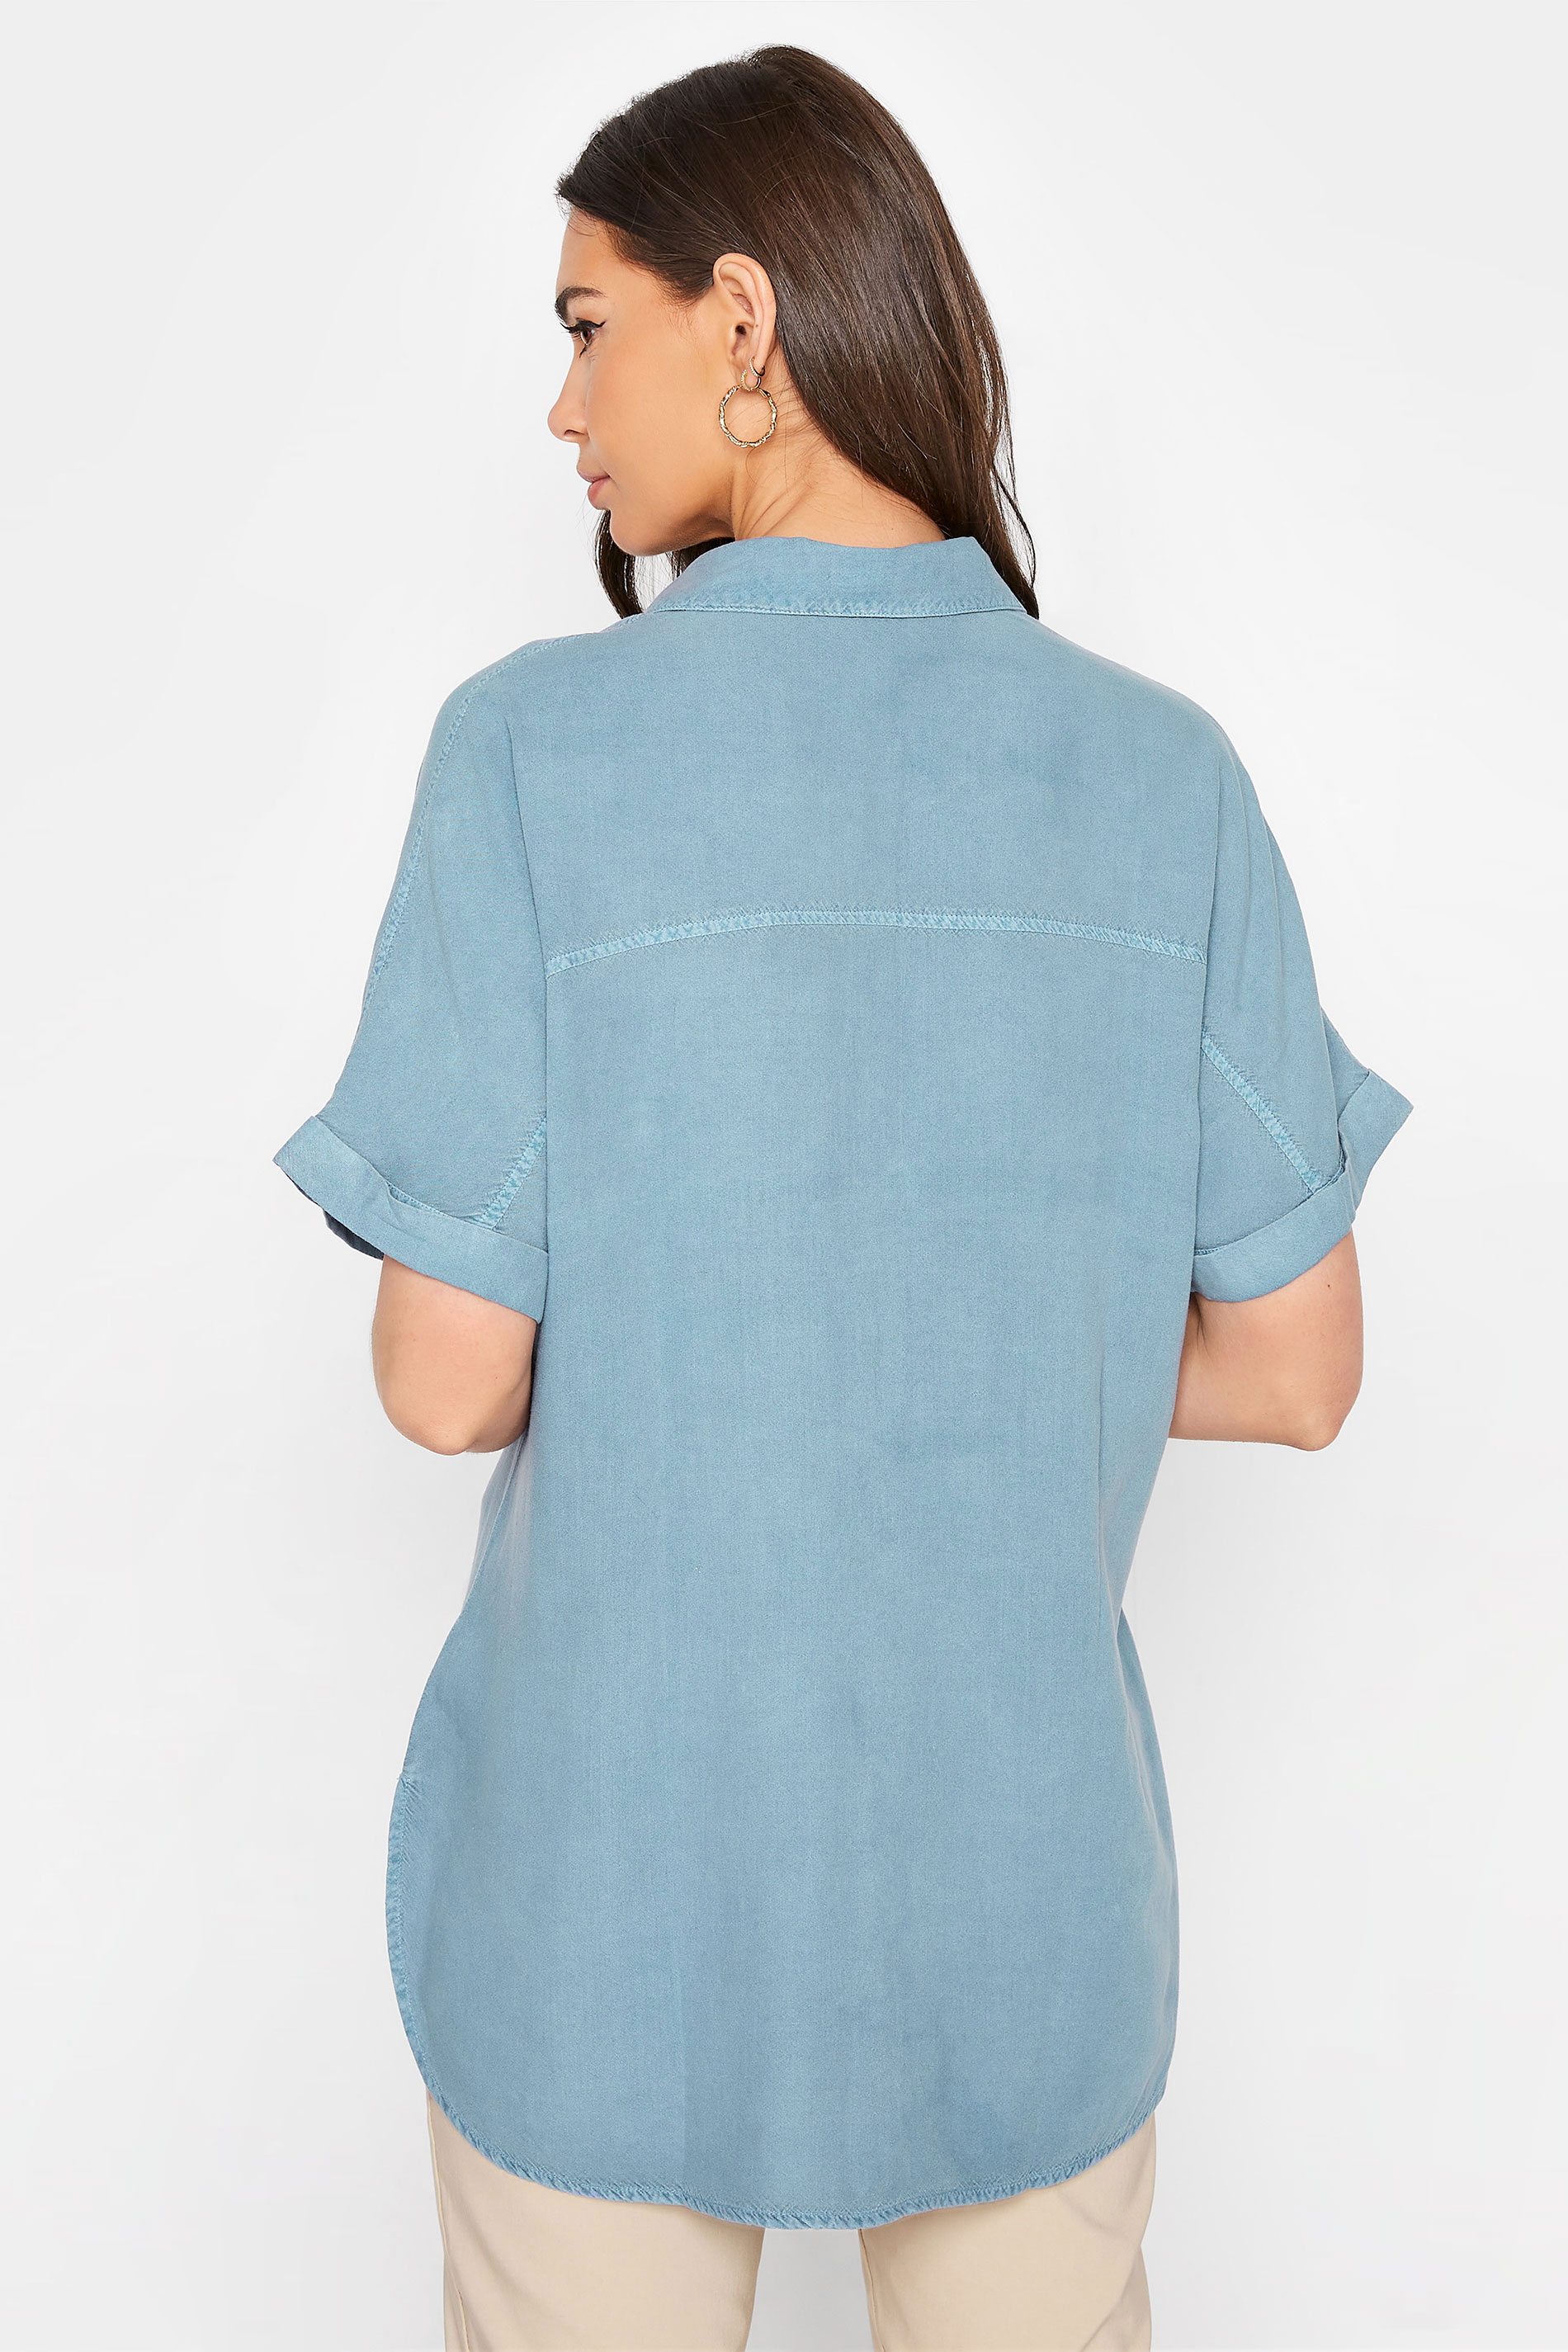 LTS Tall Women's Blue Short Sleeve Denim Shirt | Long Tall Sally 3